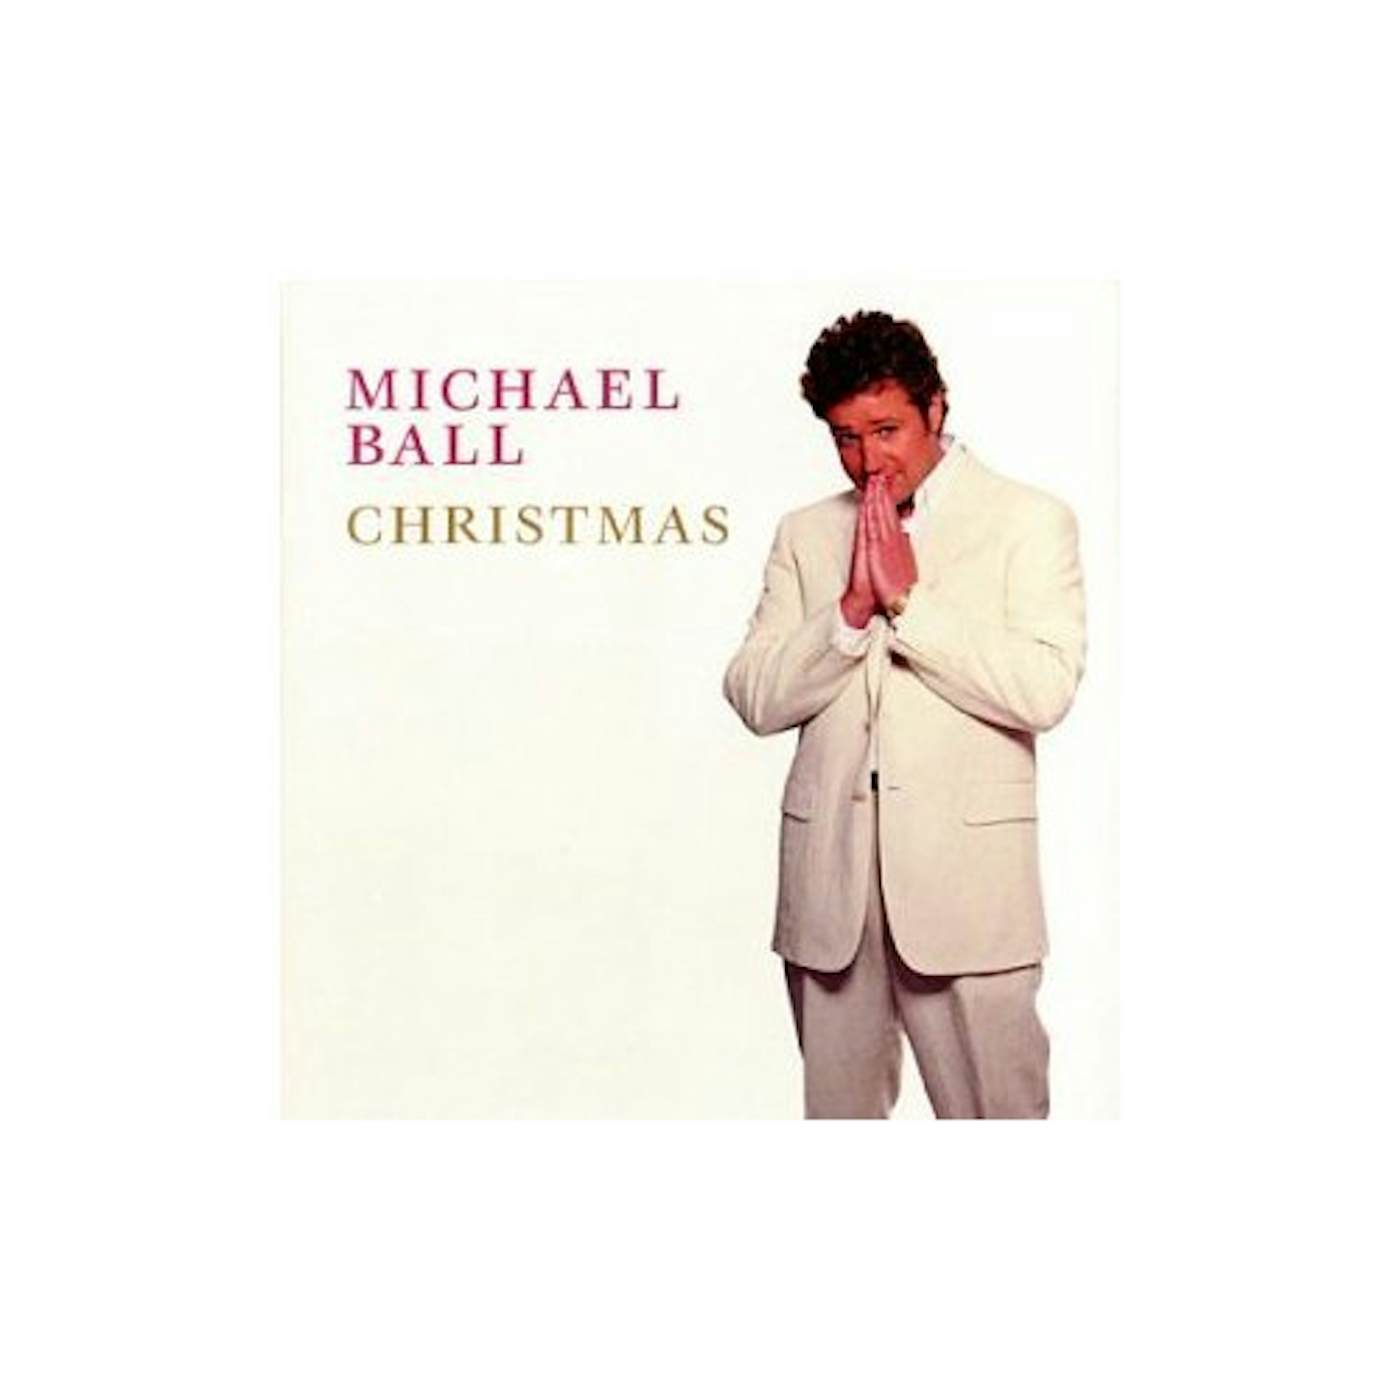 MICHAEL BALL CHRISTMAS CD